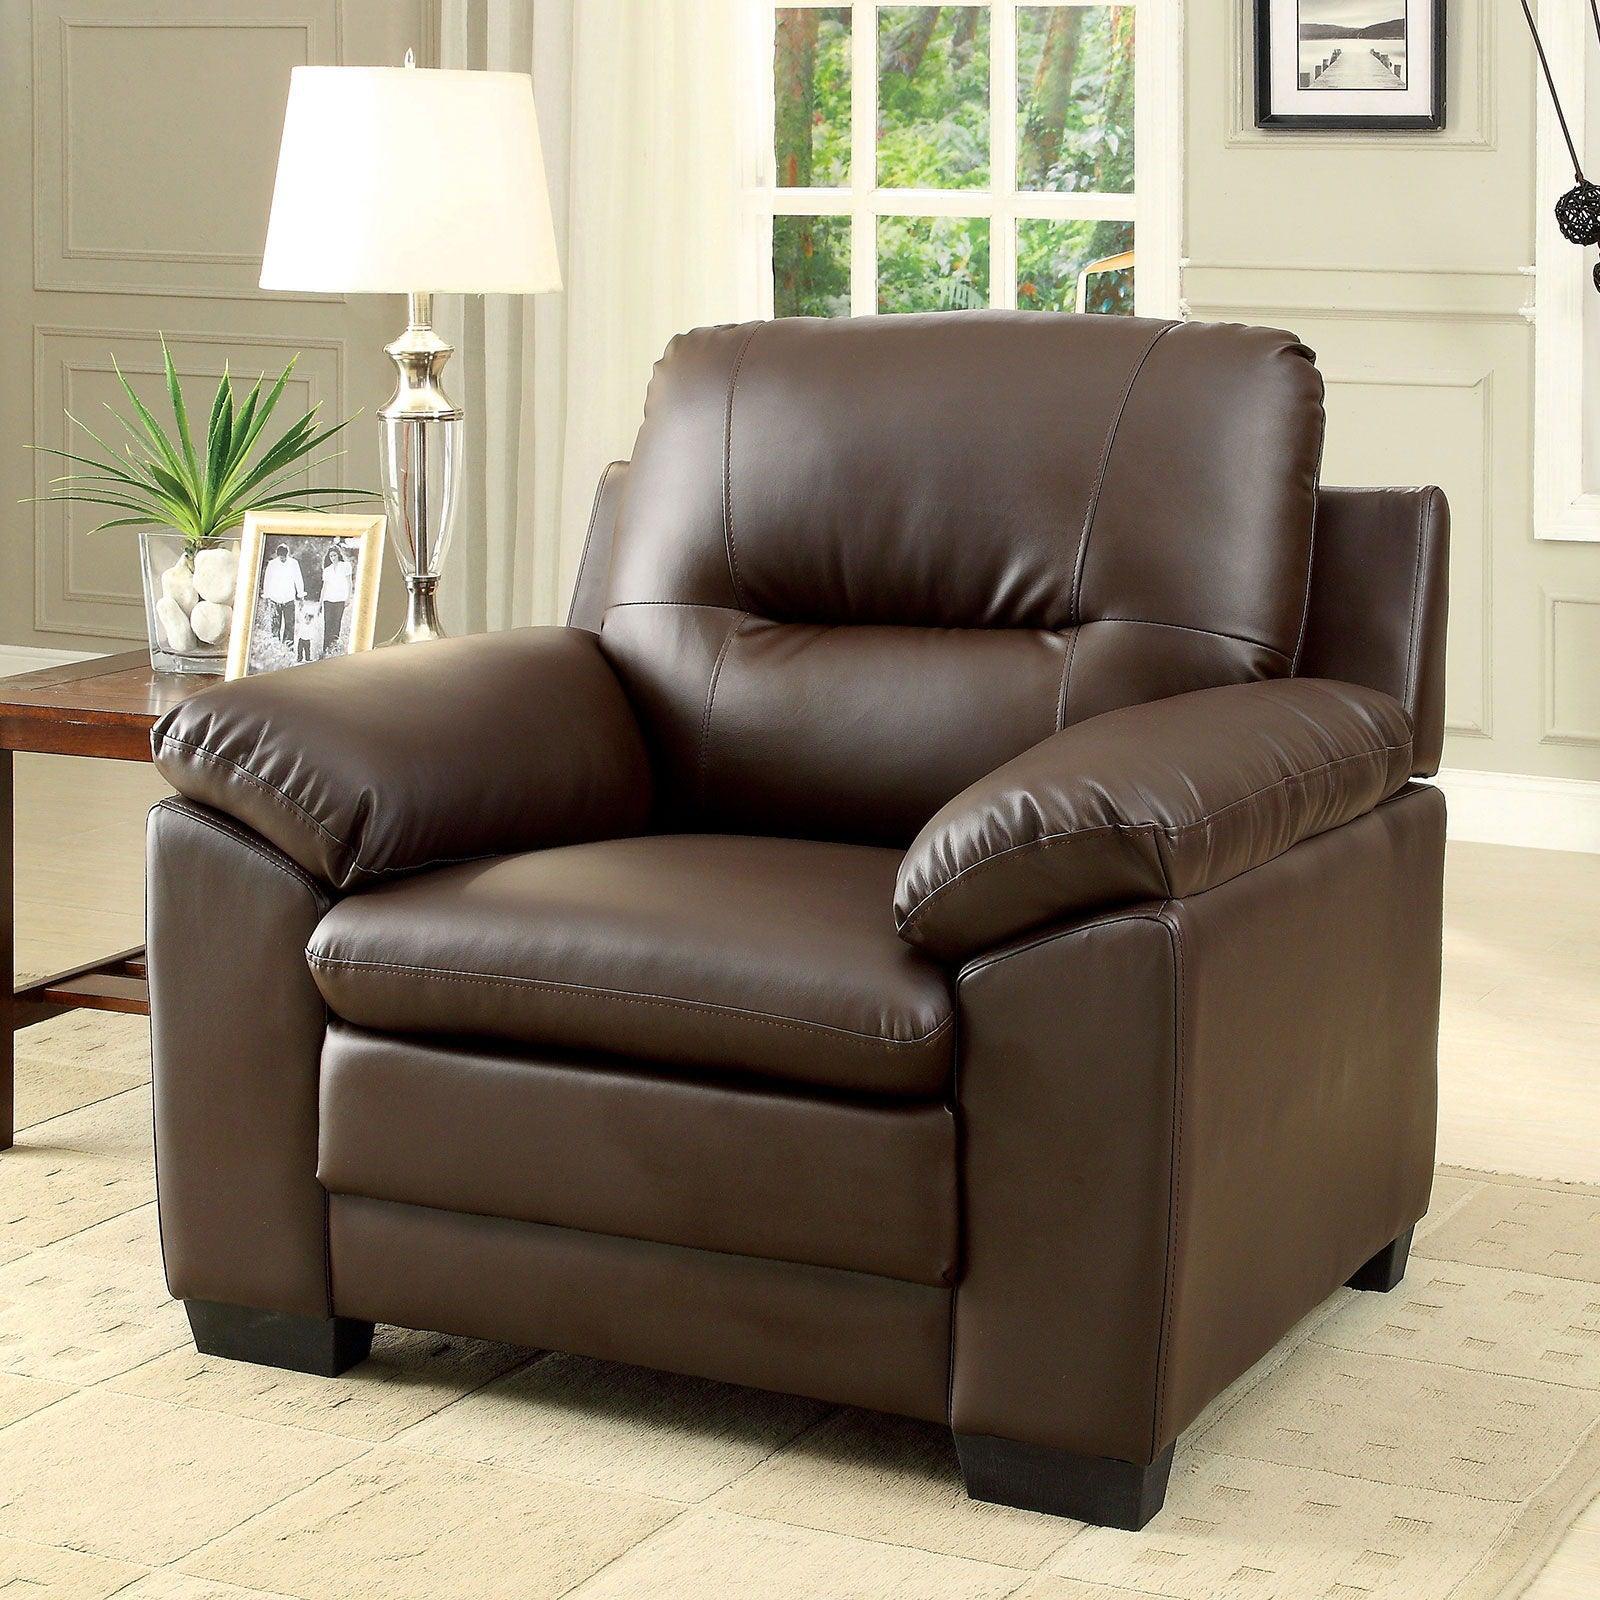 Furniture of America - Parma - Chair - Brown - 5th Avenue Furniture